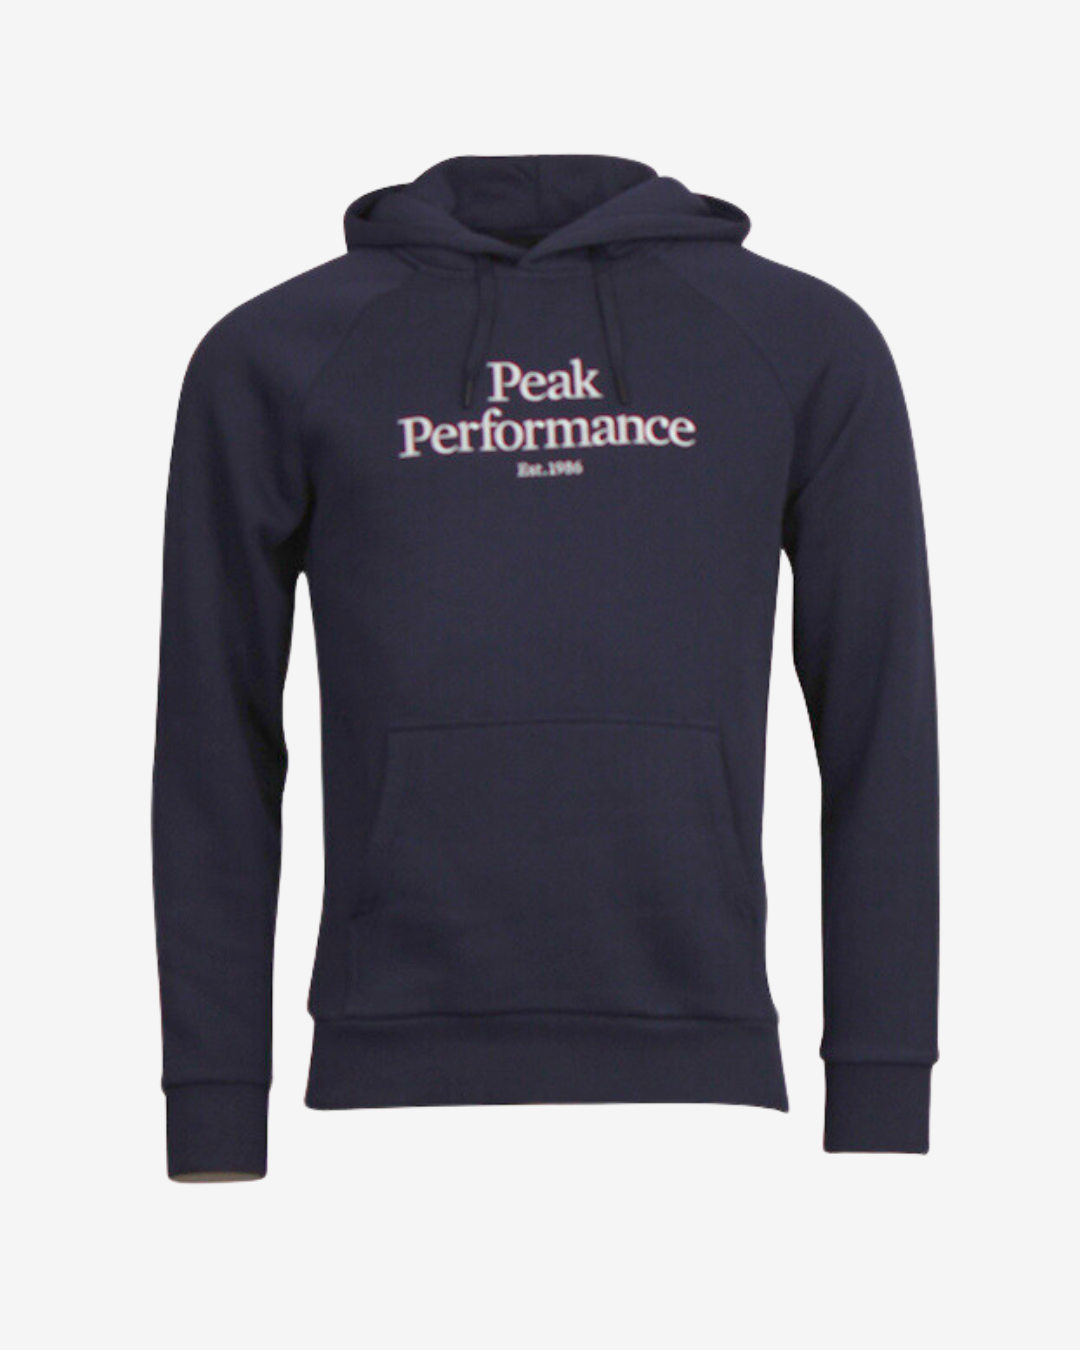 Se Peak Performance Original logo hættetrøje - Navy - Str. S - Modish.dk hos Modish.dk